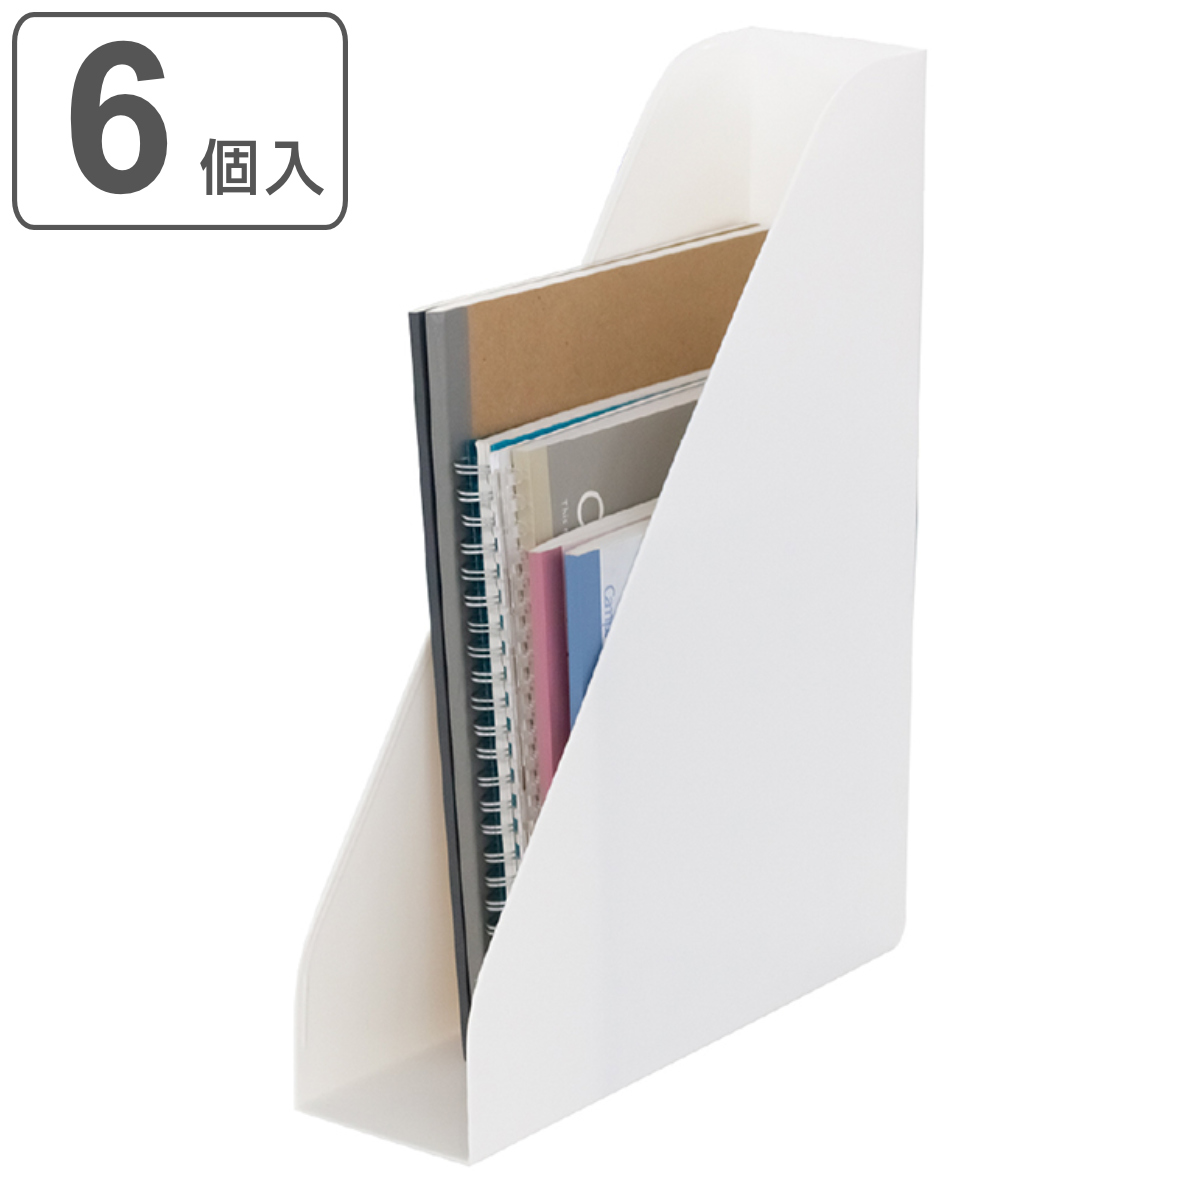  файл кейс useful A4 файл подставка 6 штук входит белый ( файл box место хранения файл документы кейс box продольный . ширина класть передний открытие сделано в Японии )